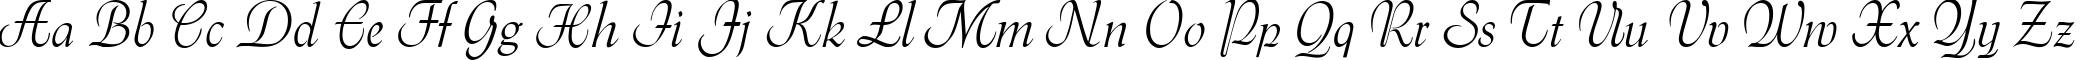 Пример написания английского алфавита шрифтом Menuet script